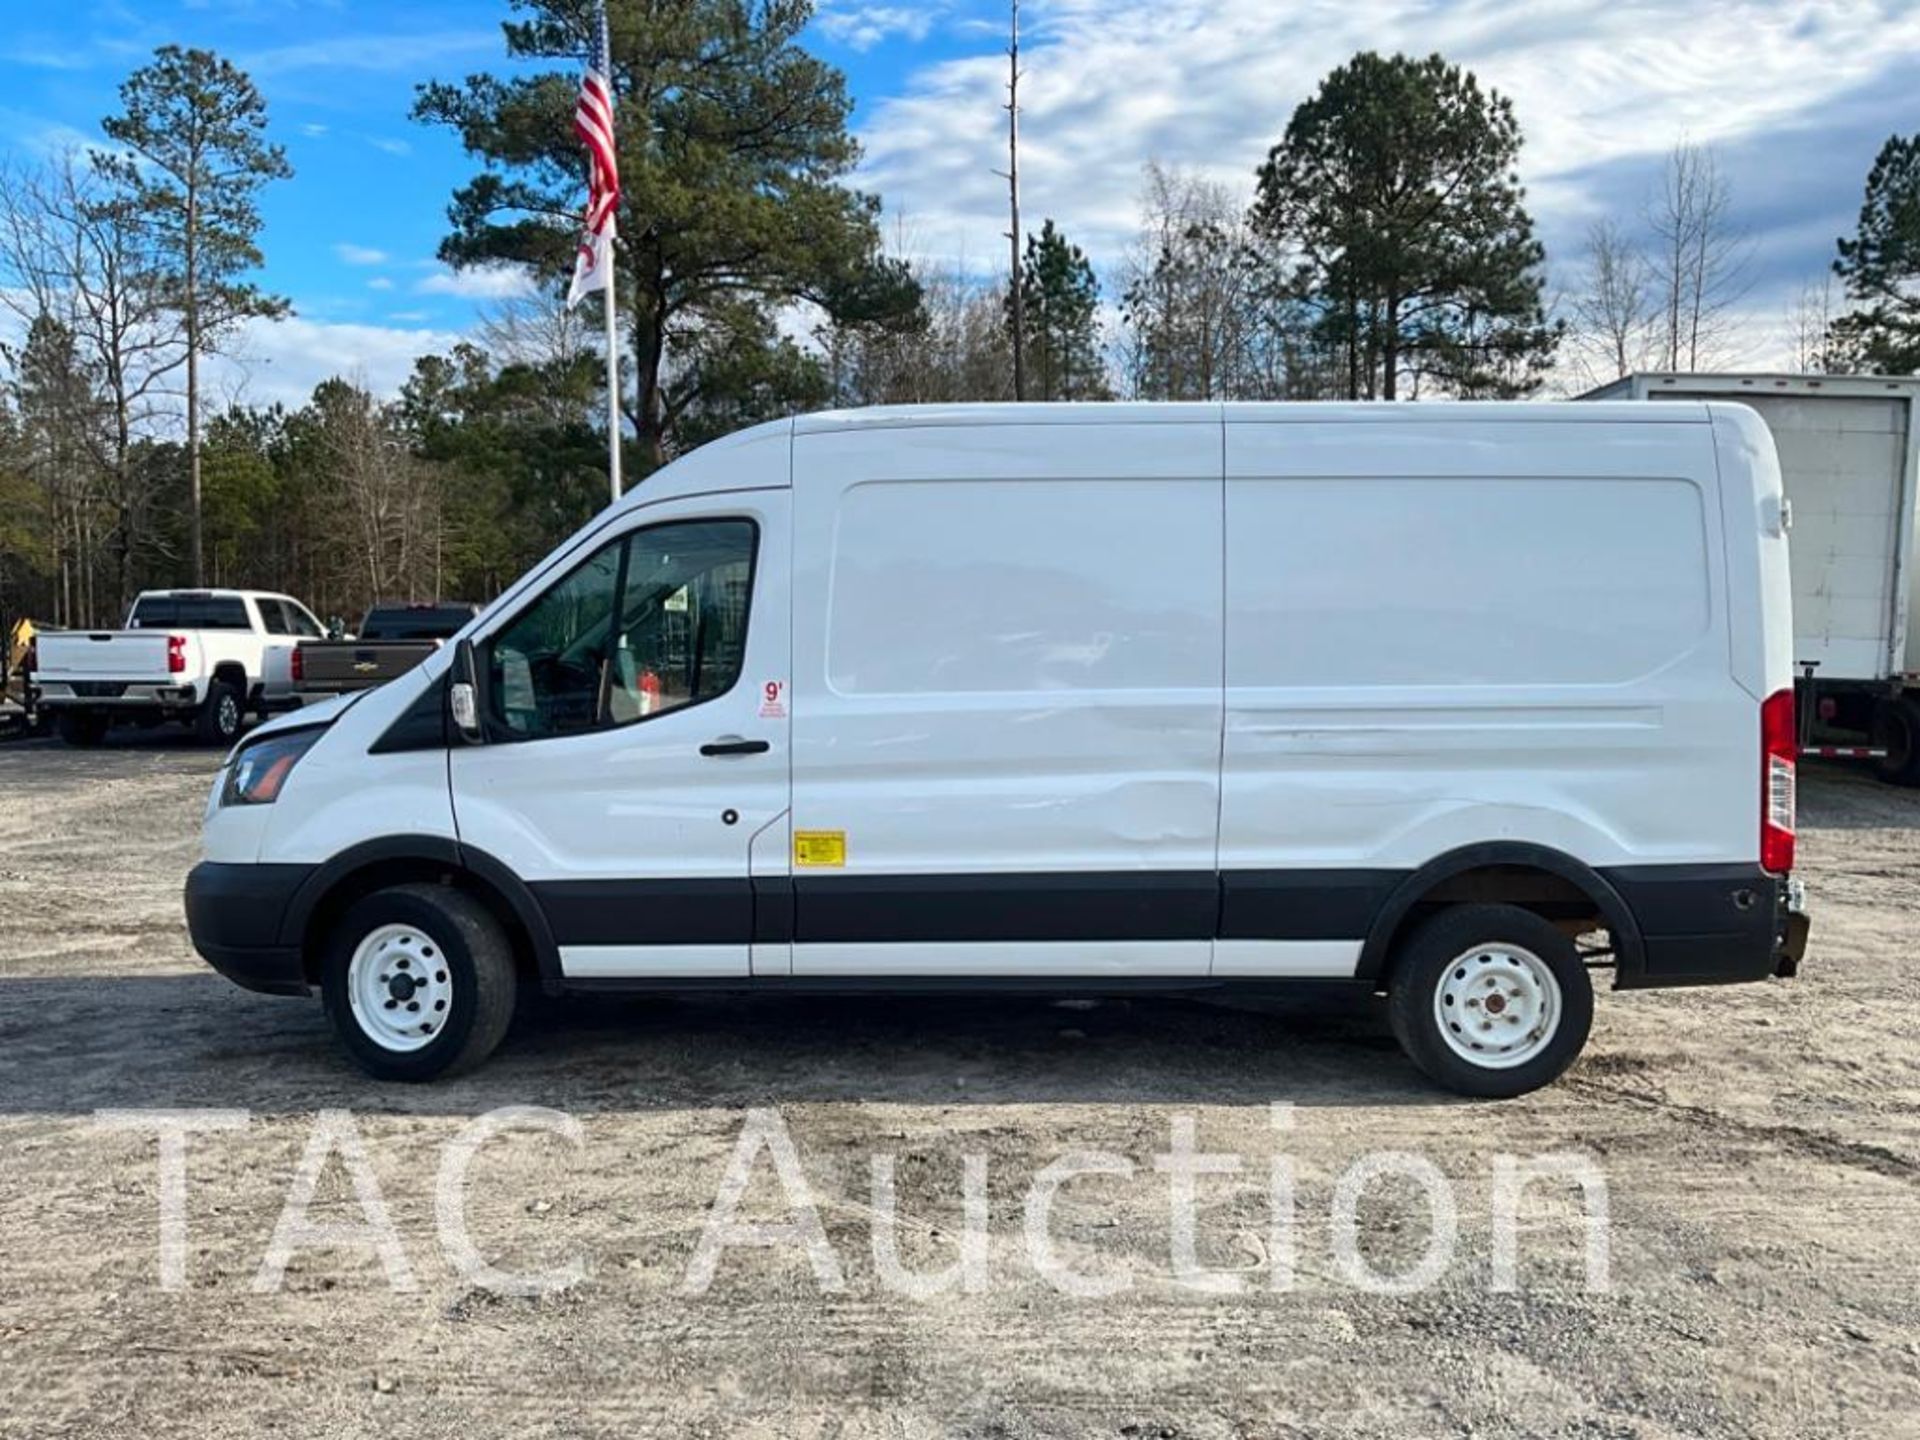 2019 Ford Transit 150 Cargo Van - Image 2 of 46